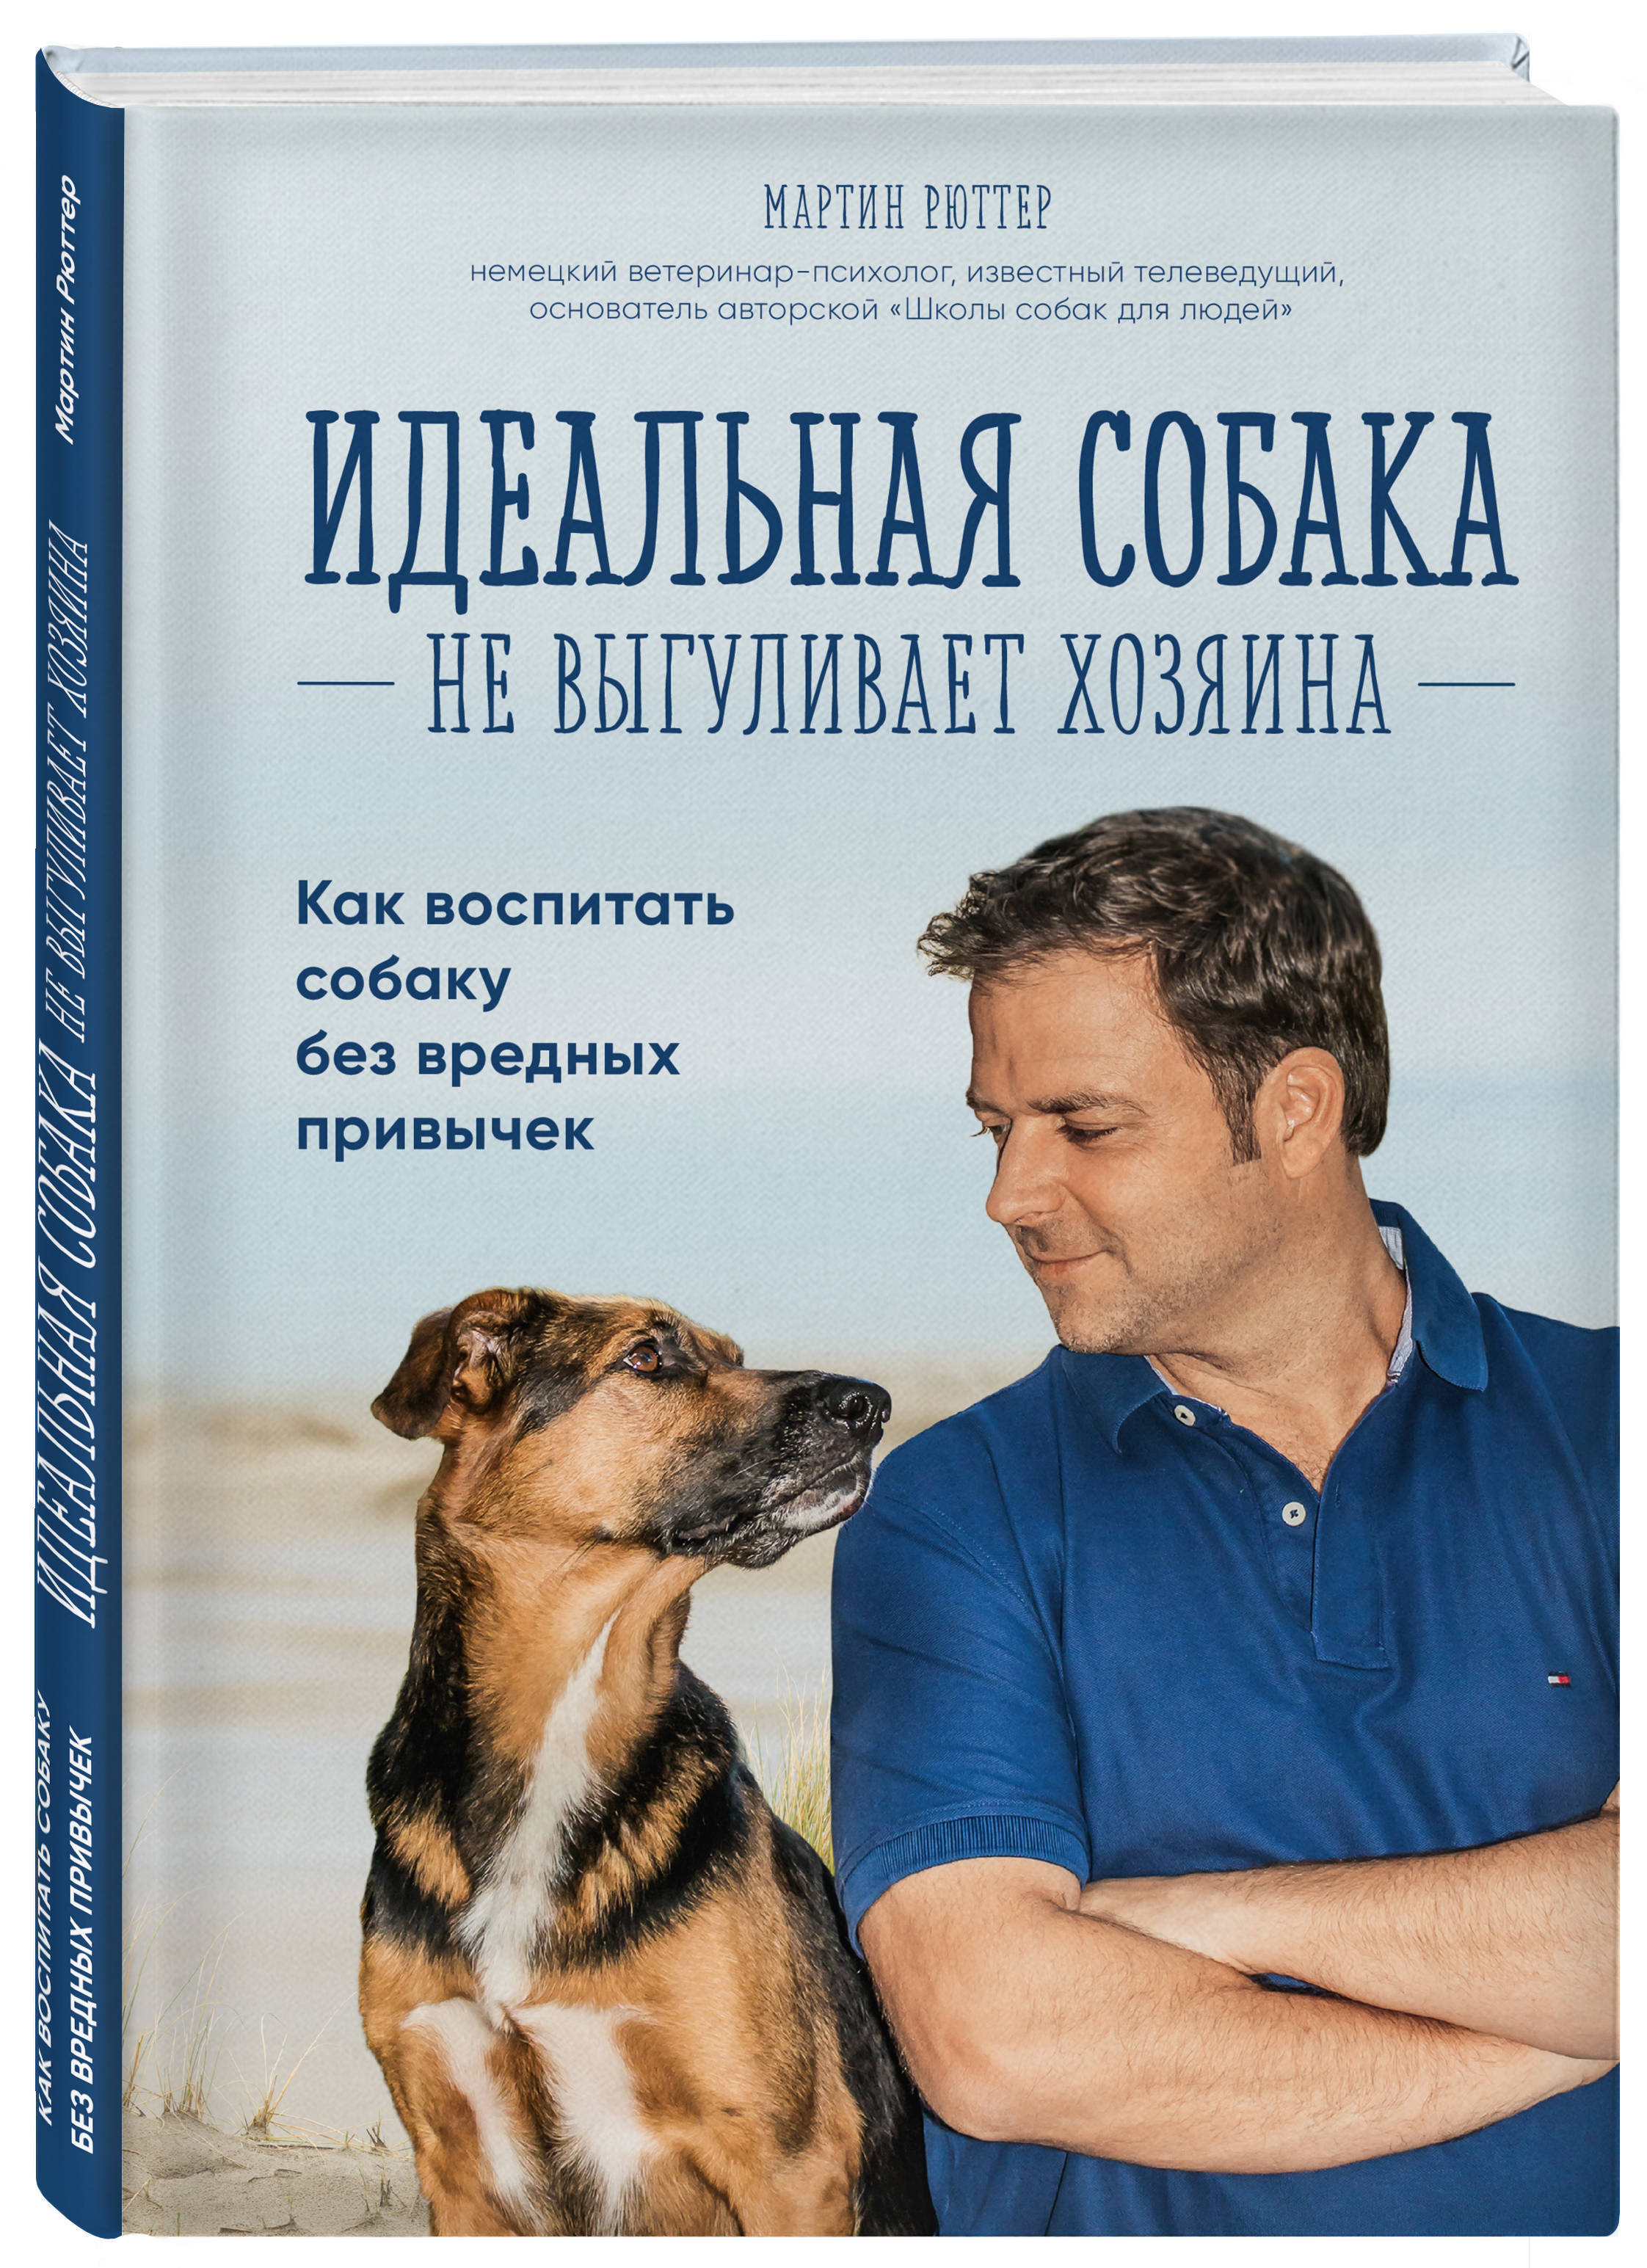 Воспитать идеальную. Книги о воспитании побак. Книги о воспитании собак. Дрессировка собак книга.